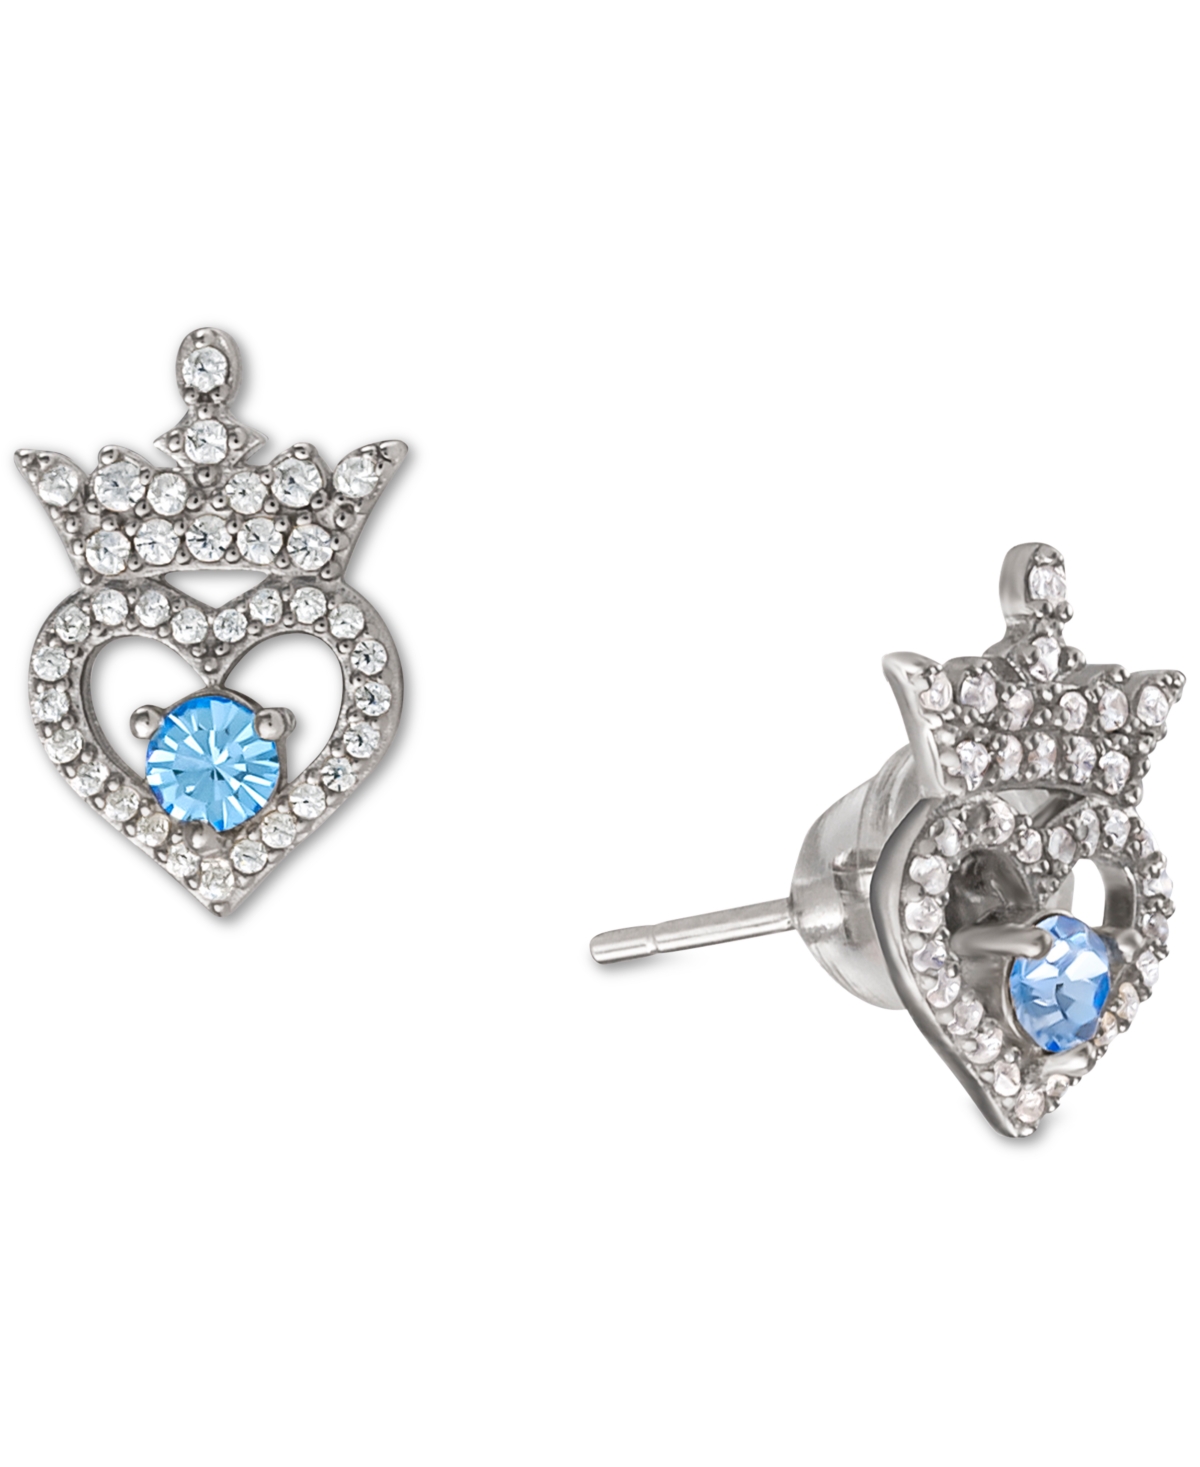 Cubic Zirconia Princess Tiara Heart Stud Earrings in Sterling Silver - December